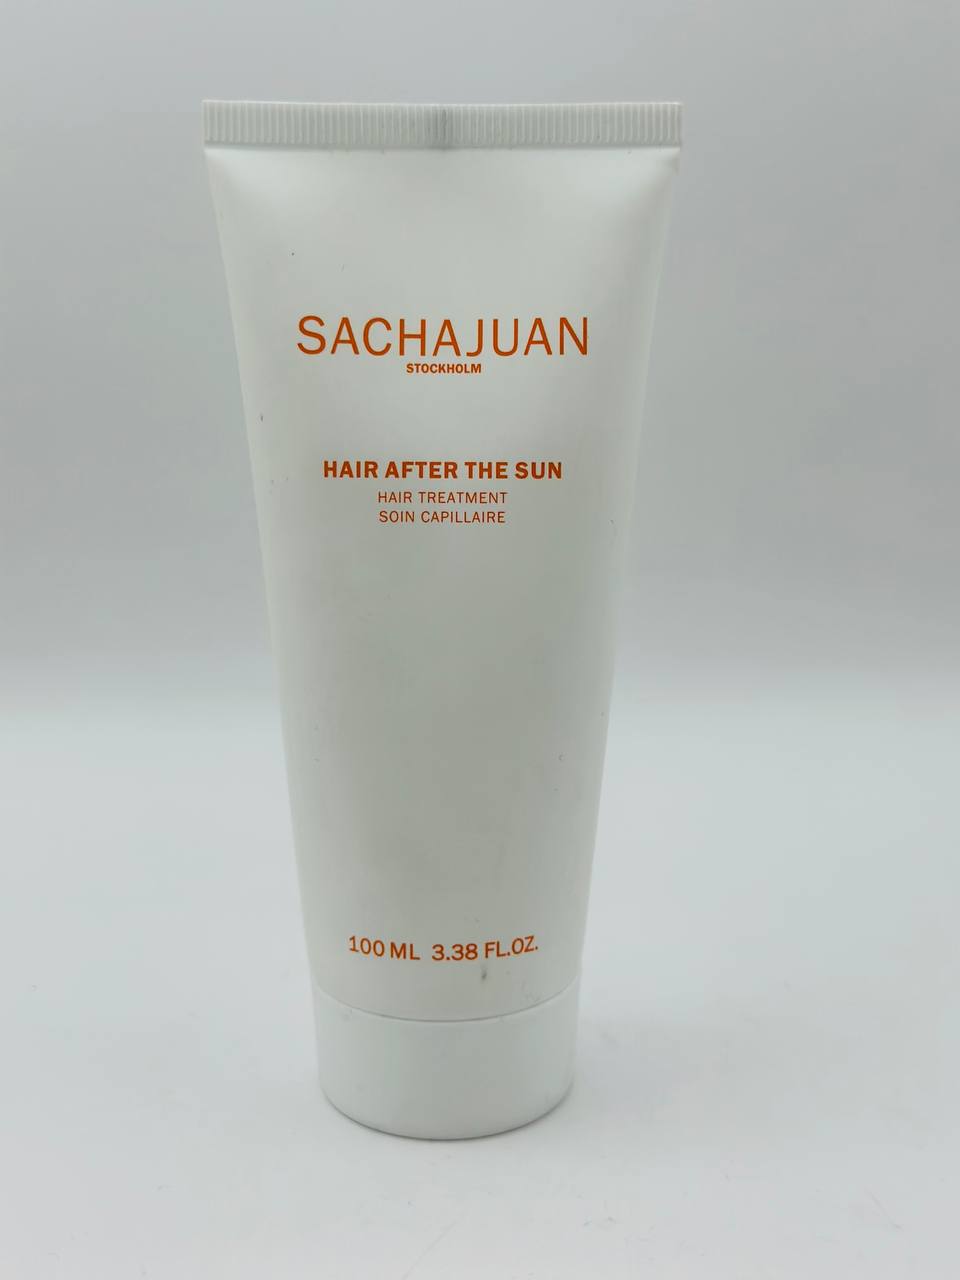 Sachajuan hair after sun